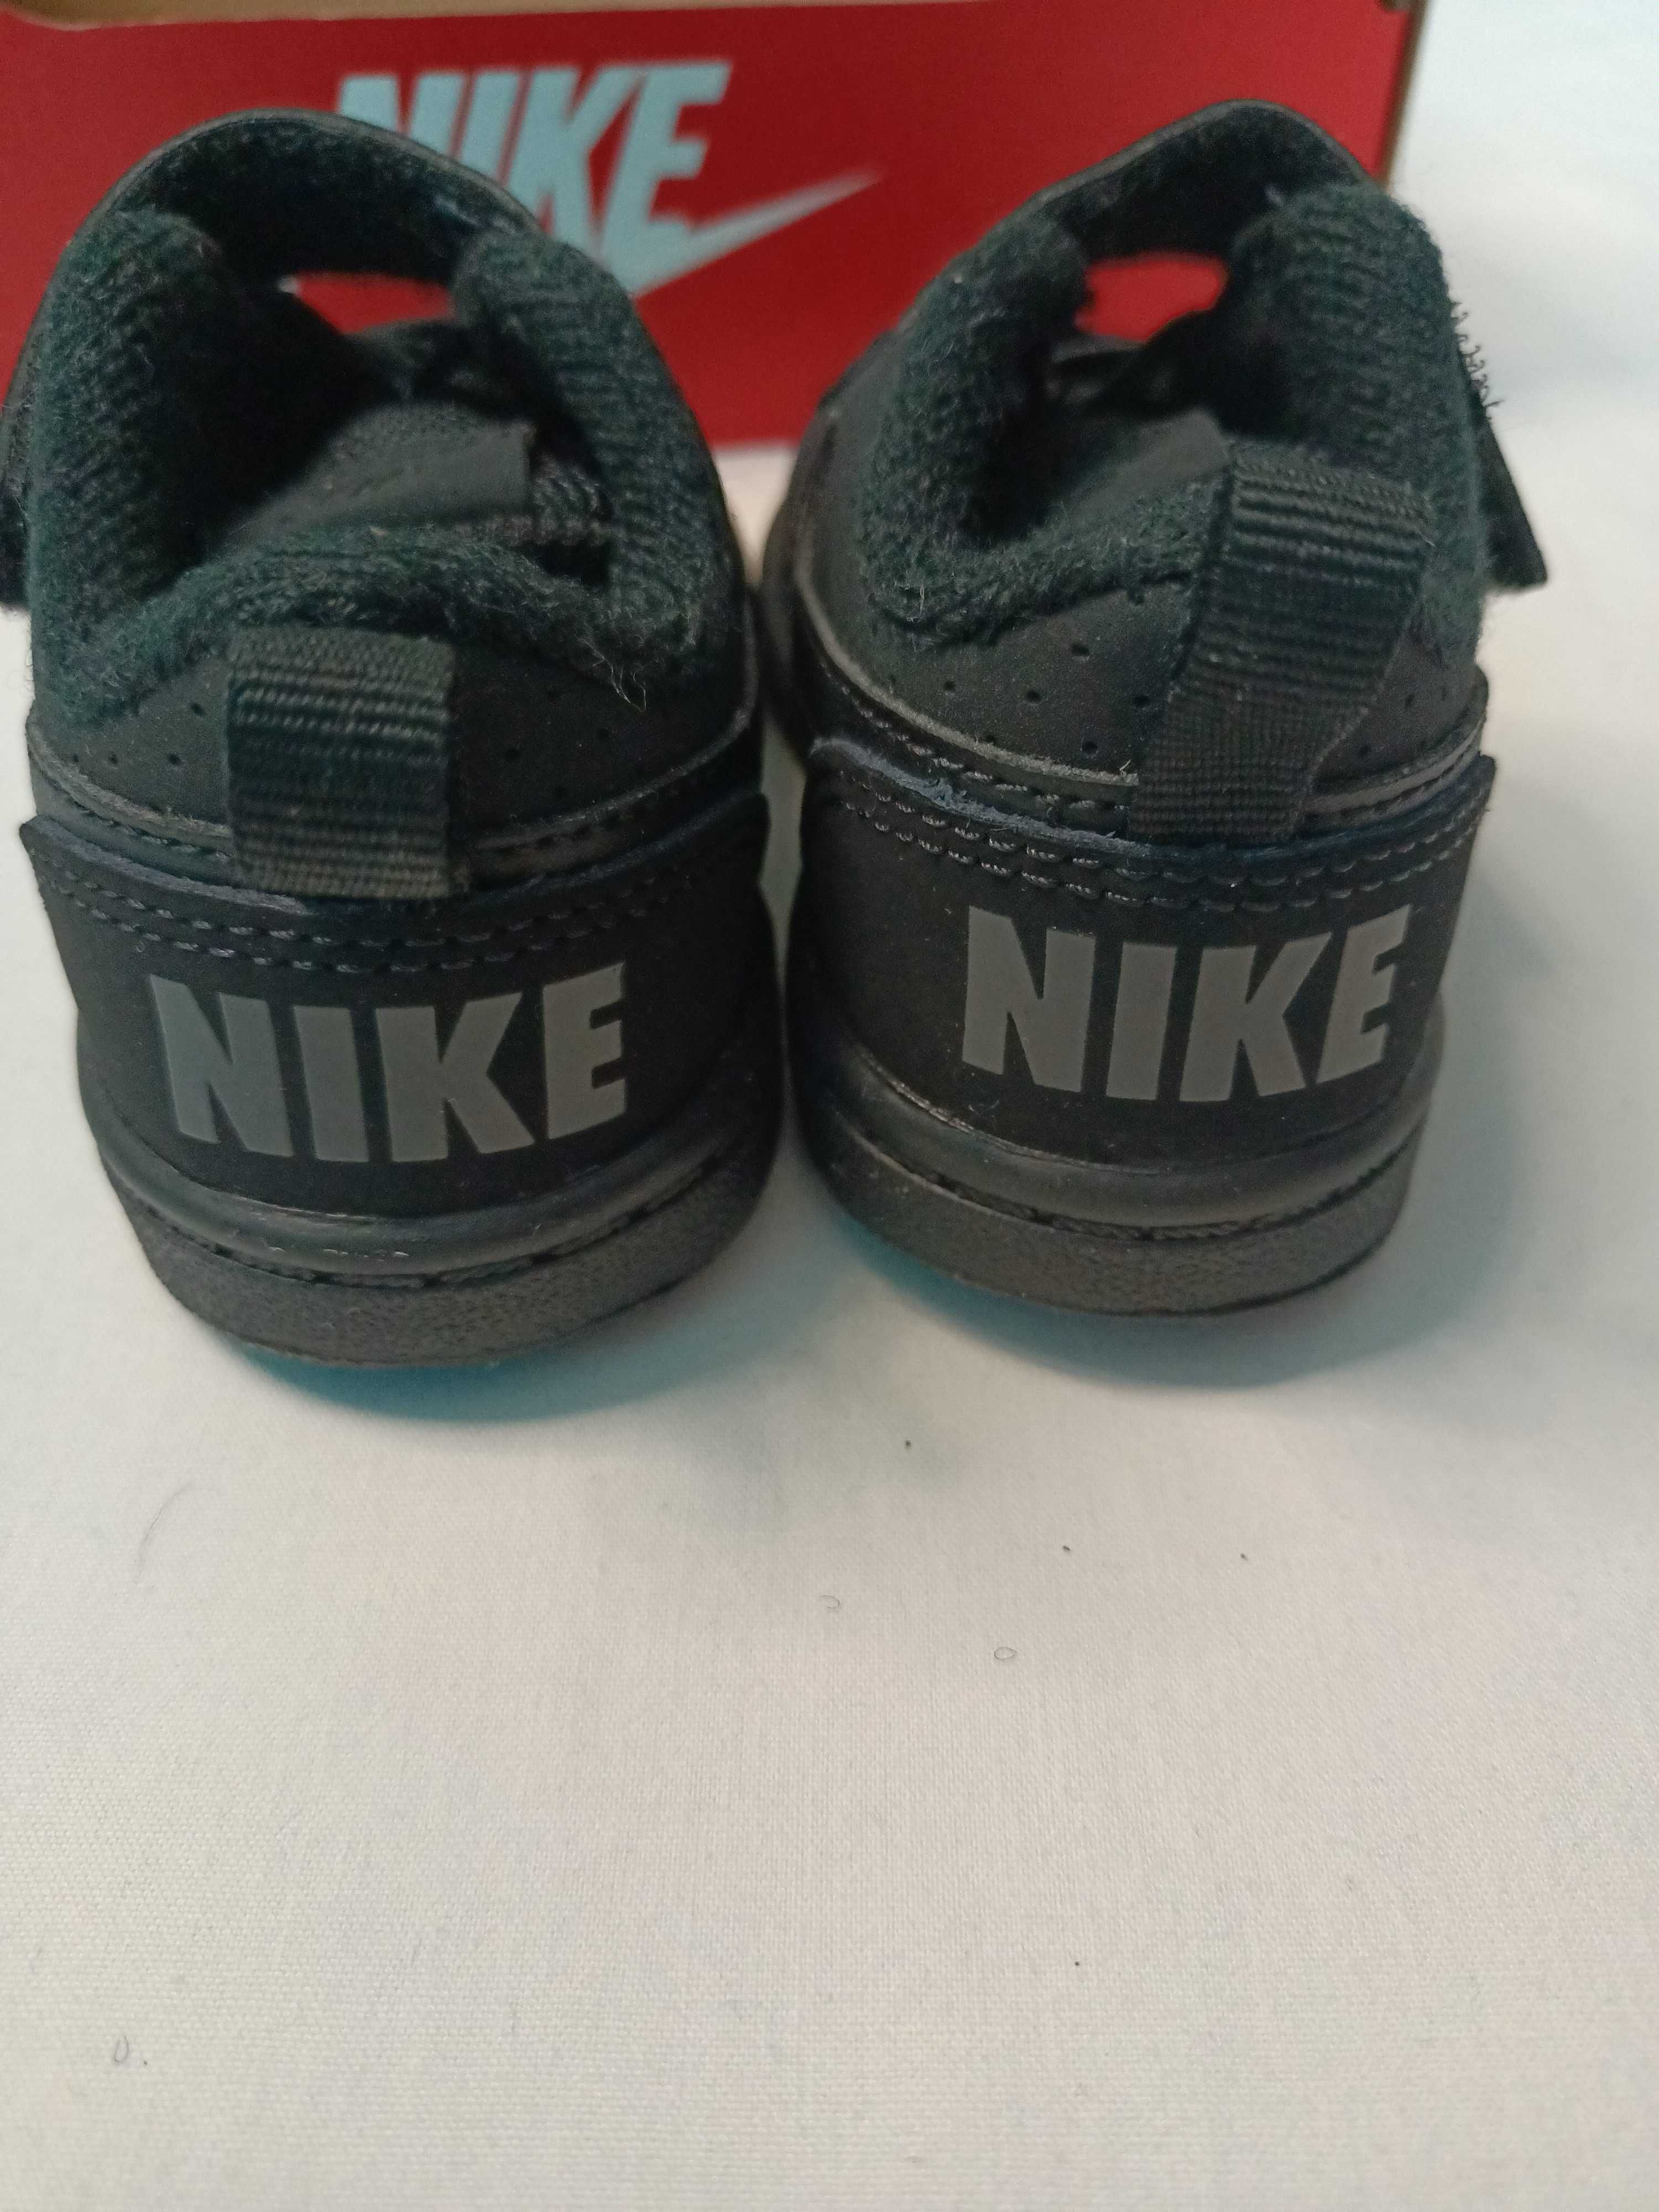 Buty dziecięce Nike